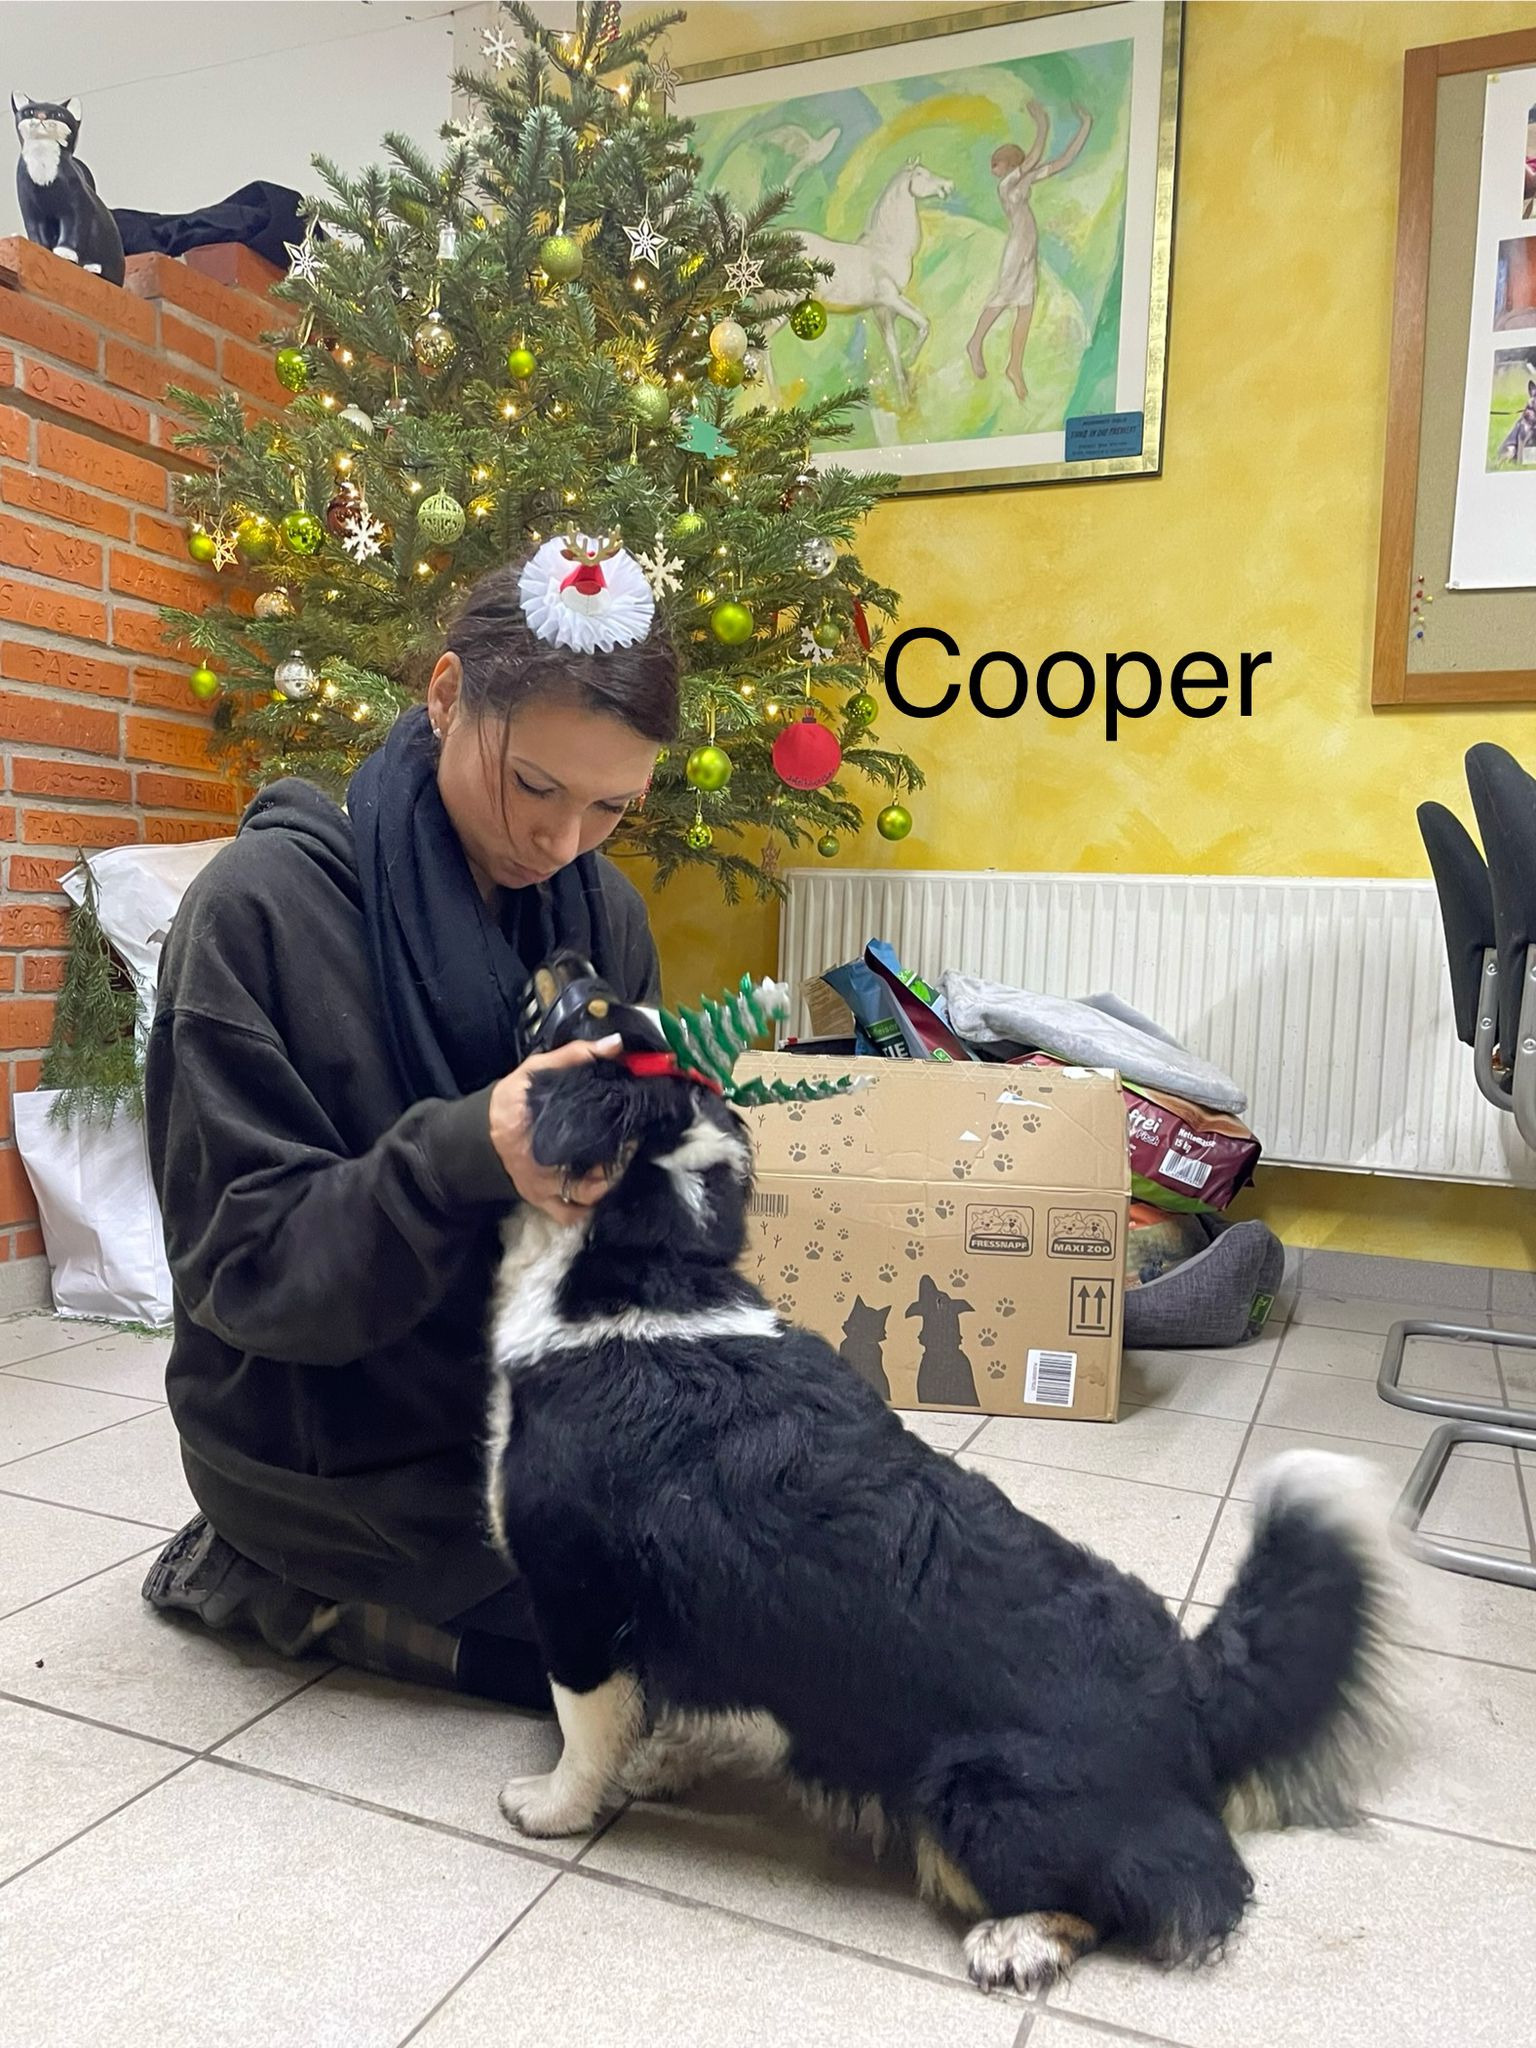 Unser kleiner Hundejunge Cooper wünscht nichts mehr, als Menschen zu finden, die ihn ernst nehmen und ihn behandeln, wie einen richtigen Hund...